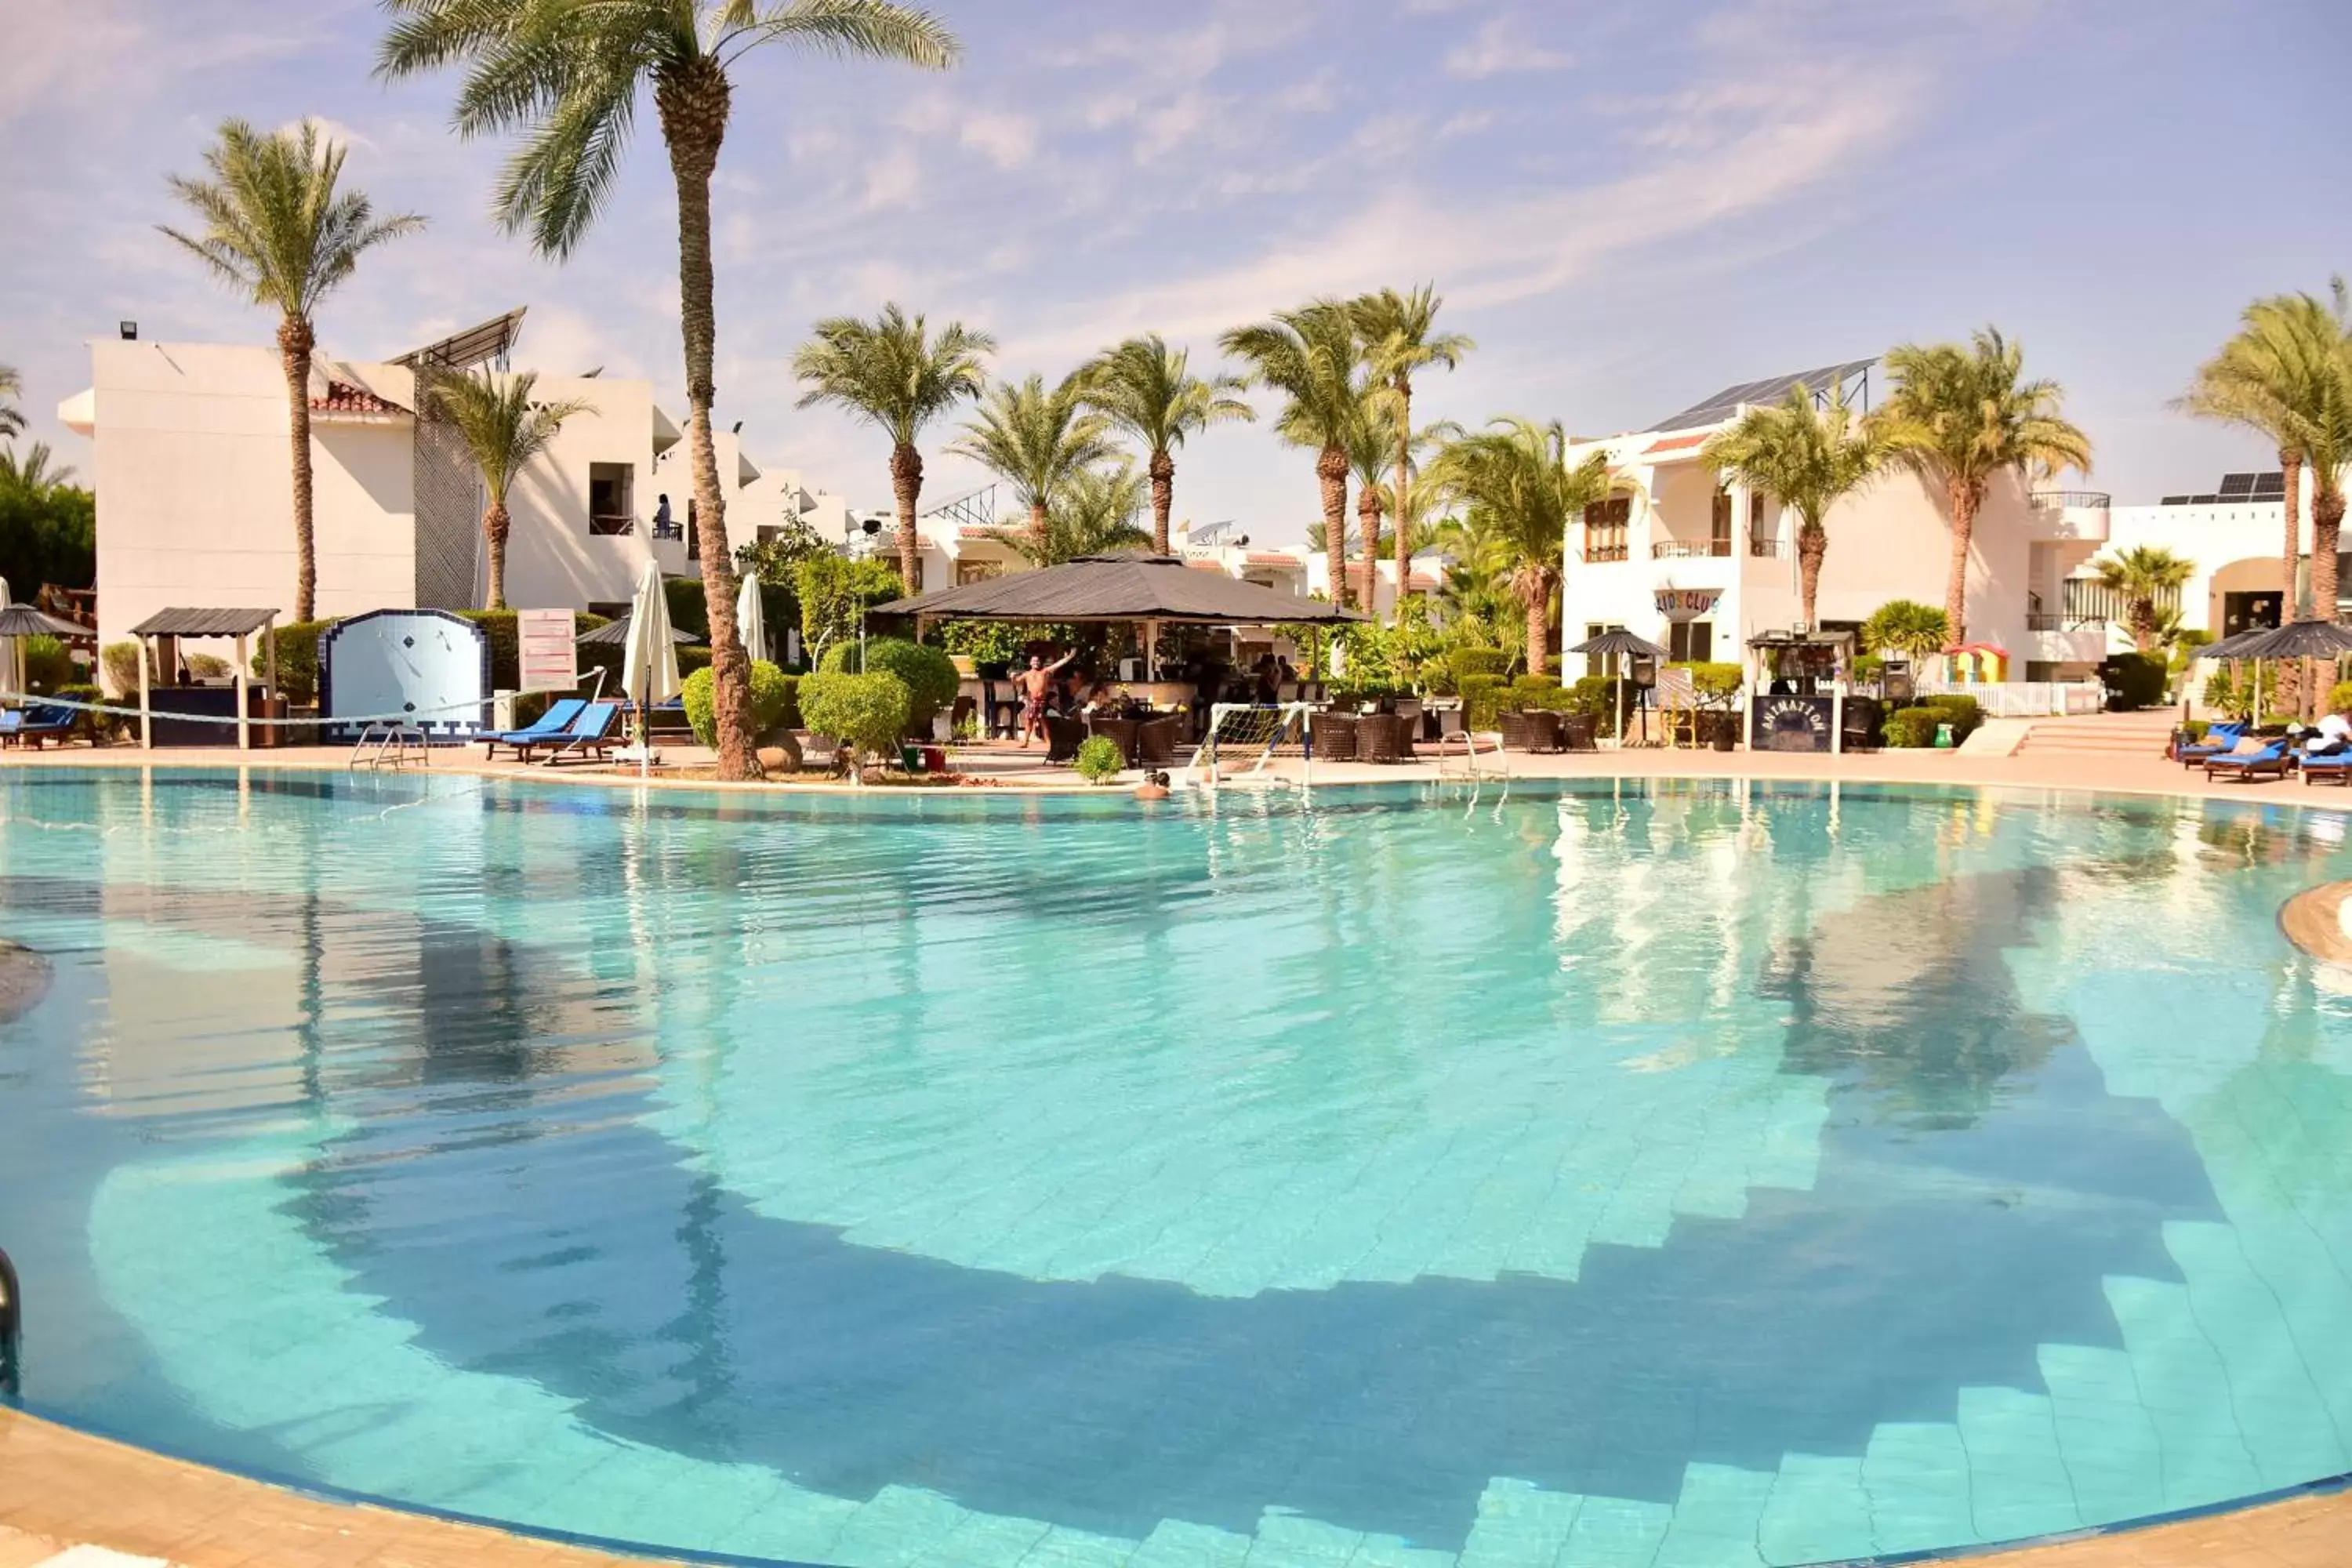 Swimming Pool in Dive Inn Resort